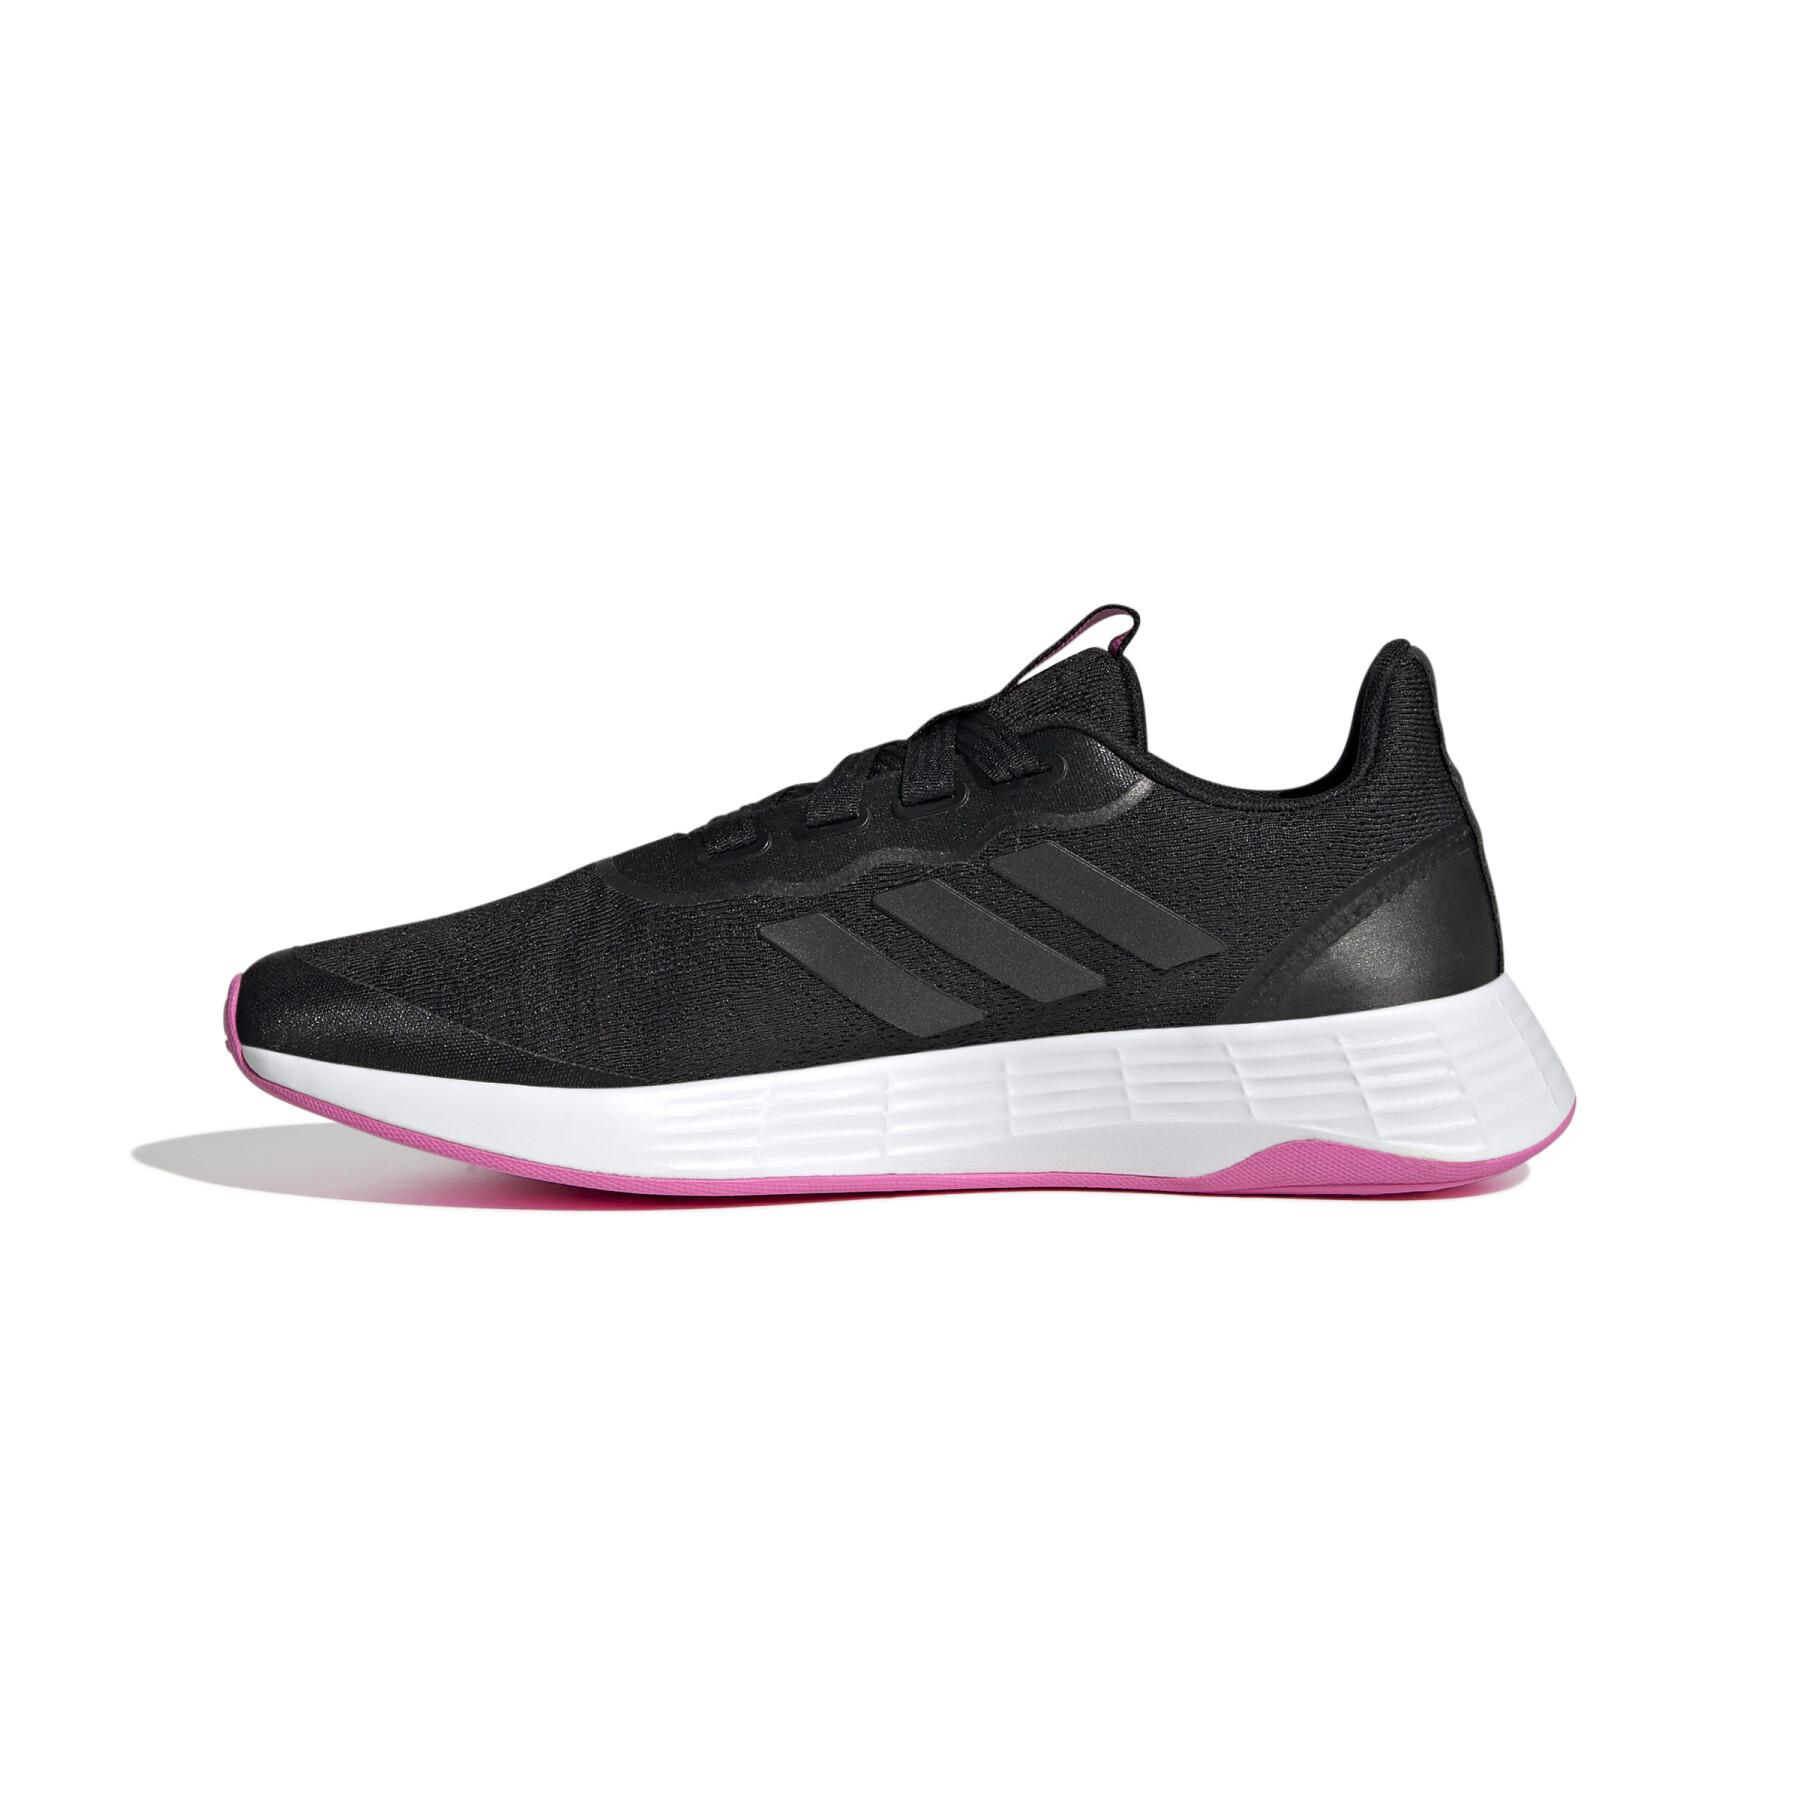 Women's running shoes adidas QT Racer Sport